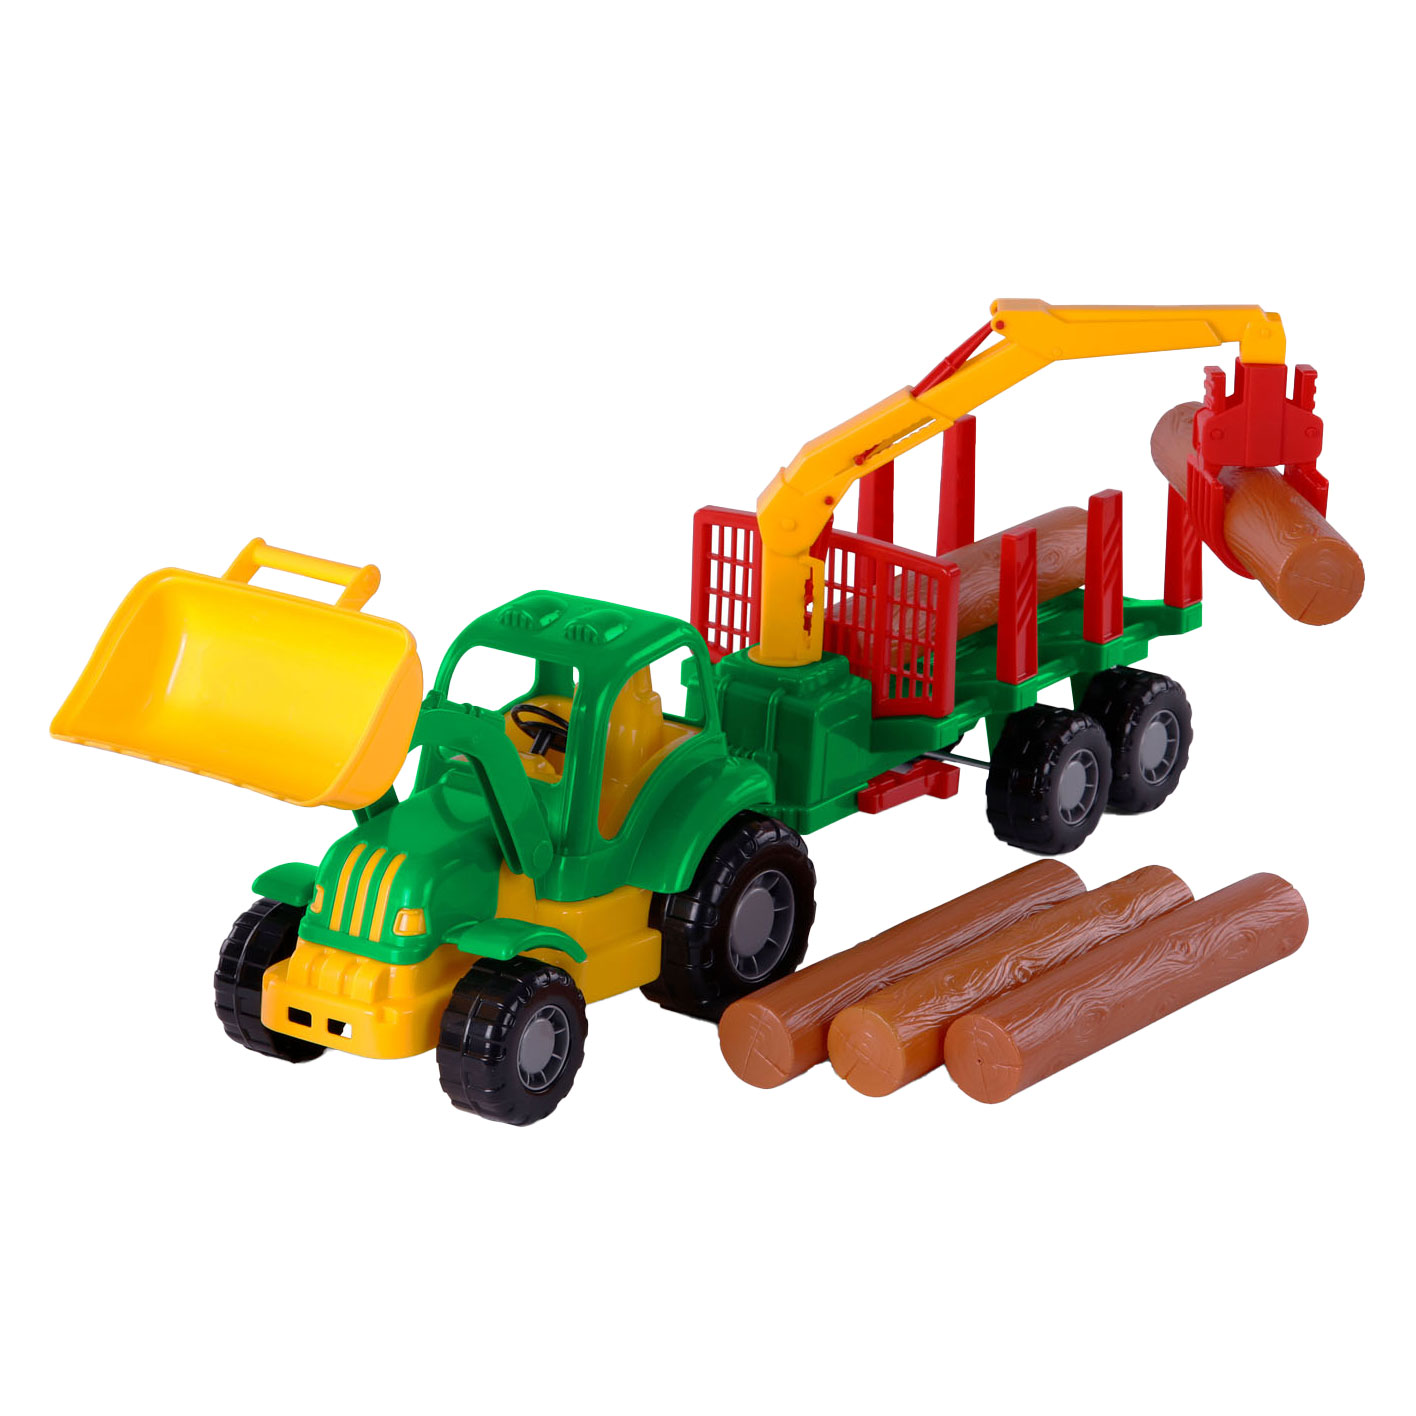 Cavallino Classic Traktor mit Anhänger und Holz, 61 cm